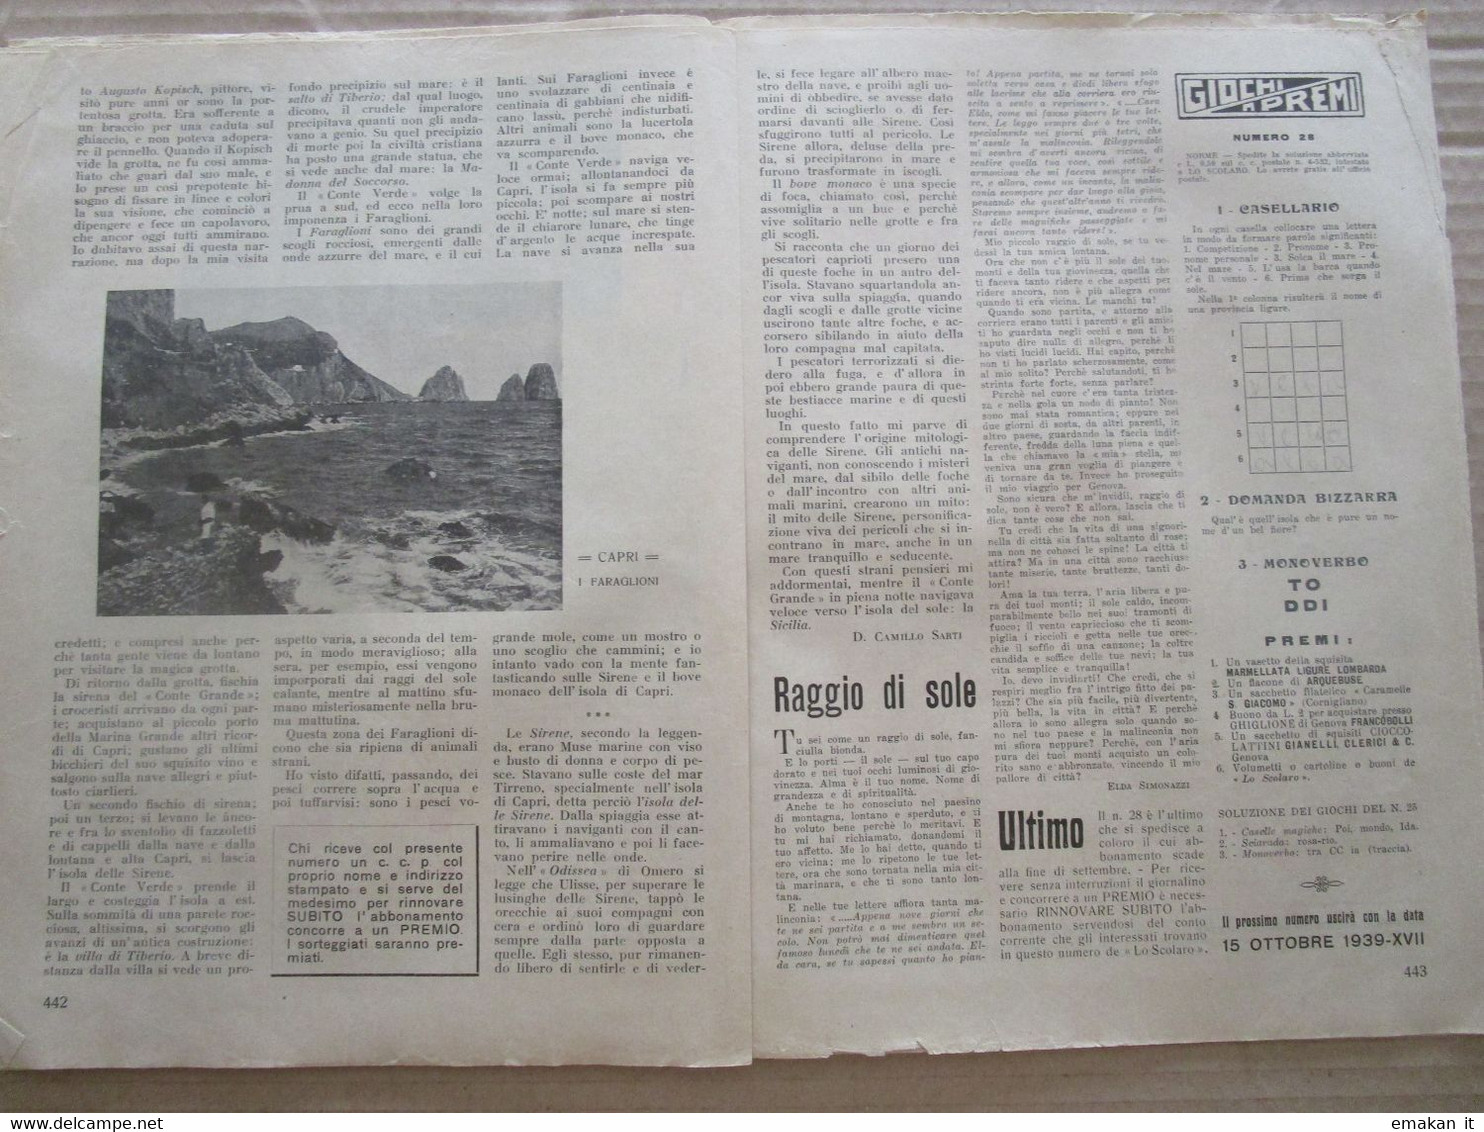 # LO SCOLARO N 28 / 1939 CORRIERE DEI PICCOLI STUDENTI / ARTICOLO CAPRI - First Editions